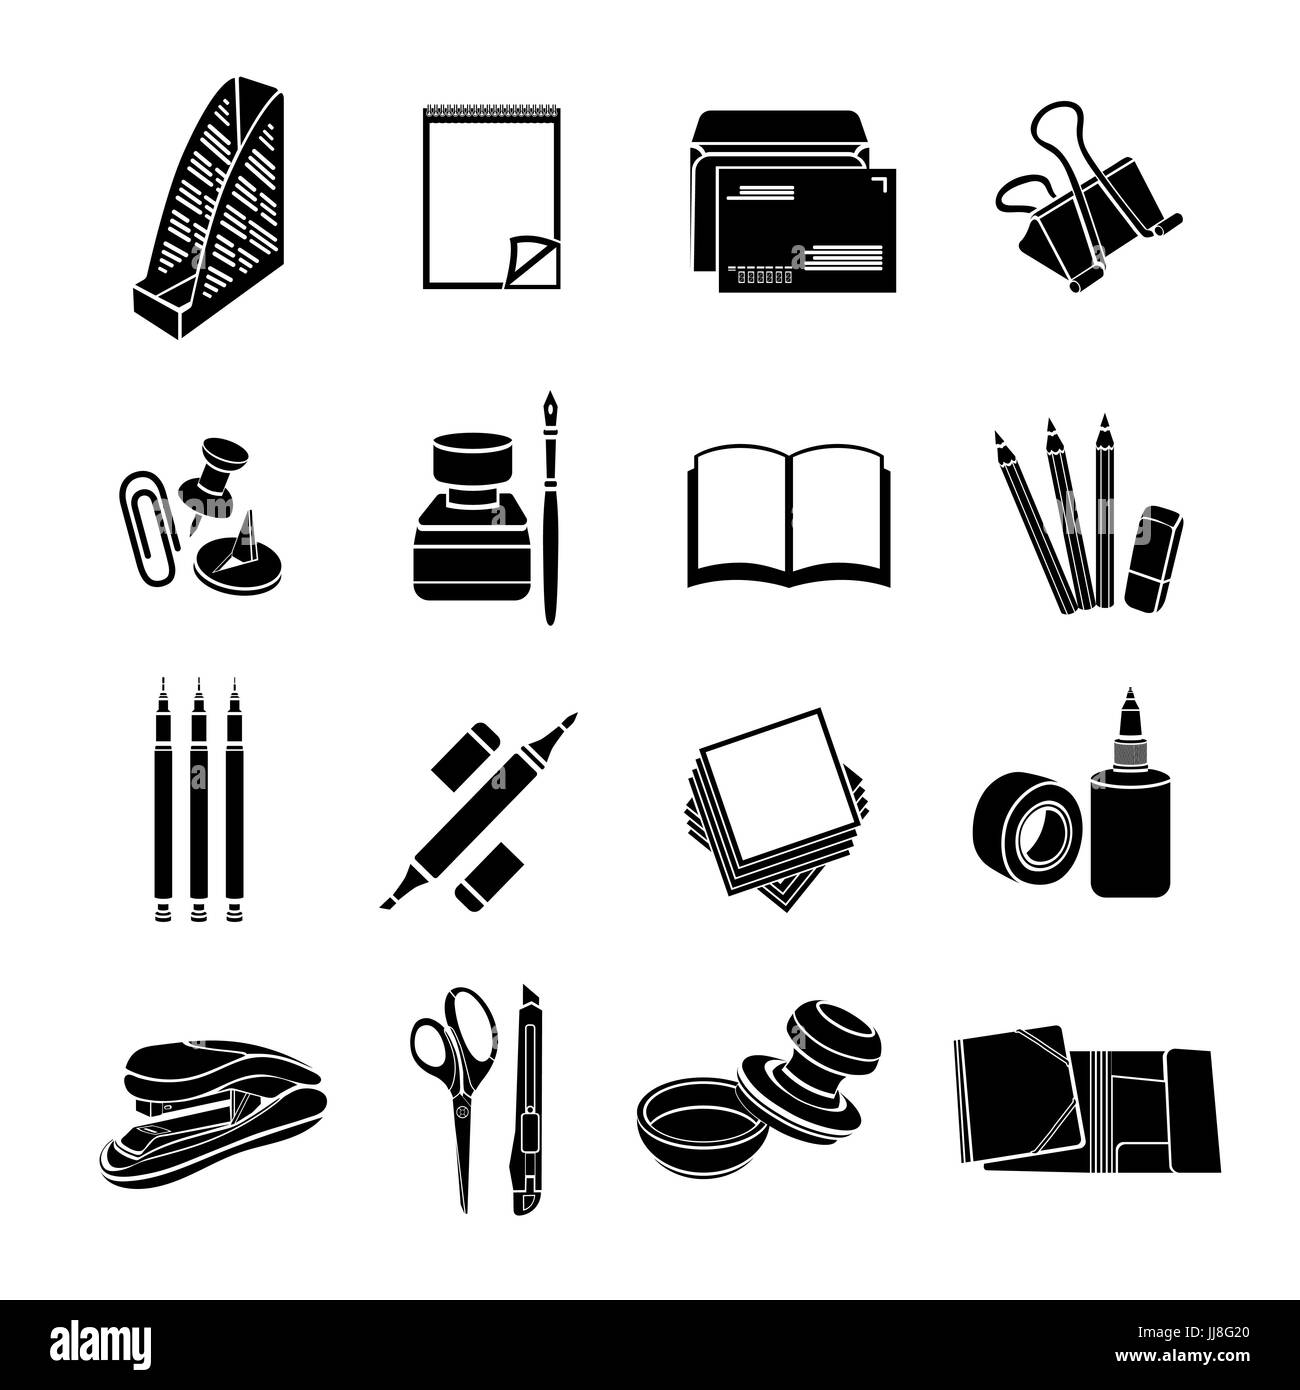 Articoli di cancelleria set di icone vettoriali. Piatto nero strumenti di office isolati su sfondo bianco Illustrazione Vettoriale